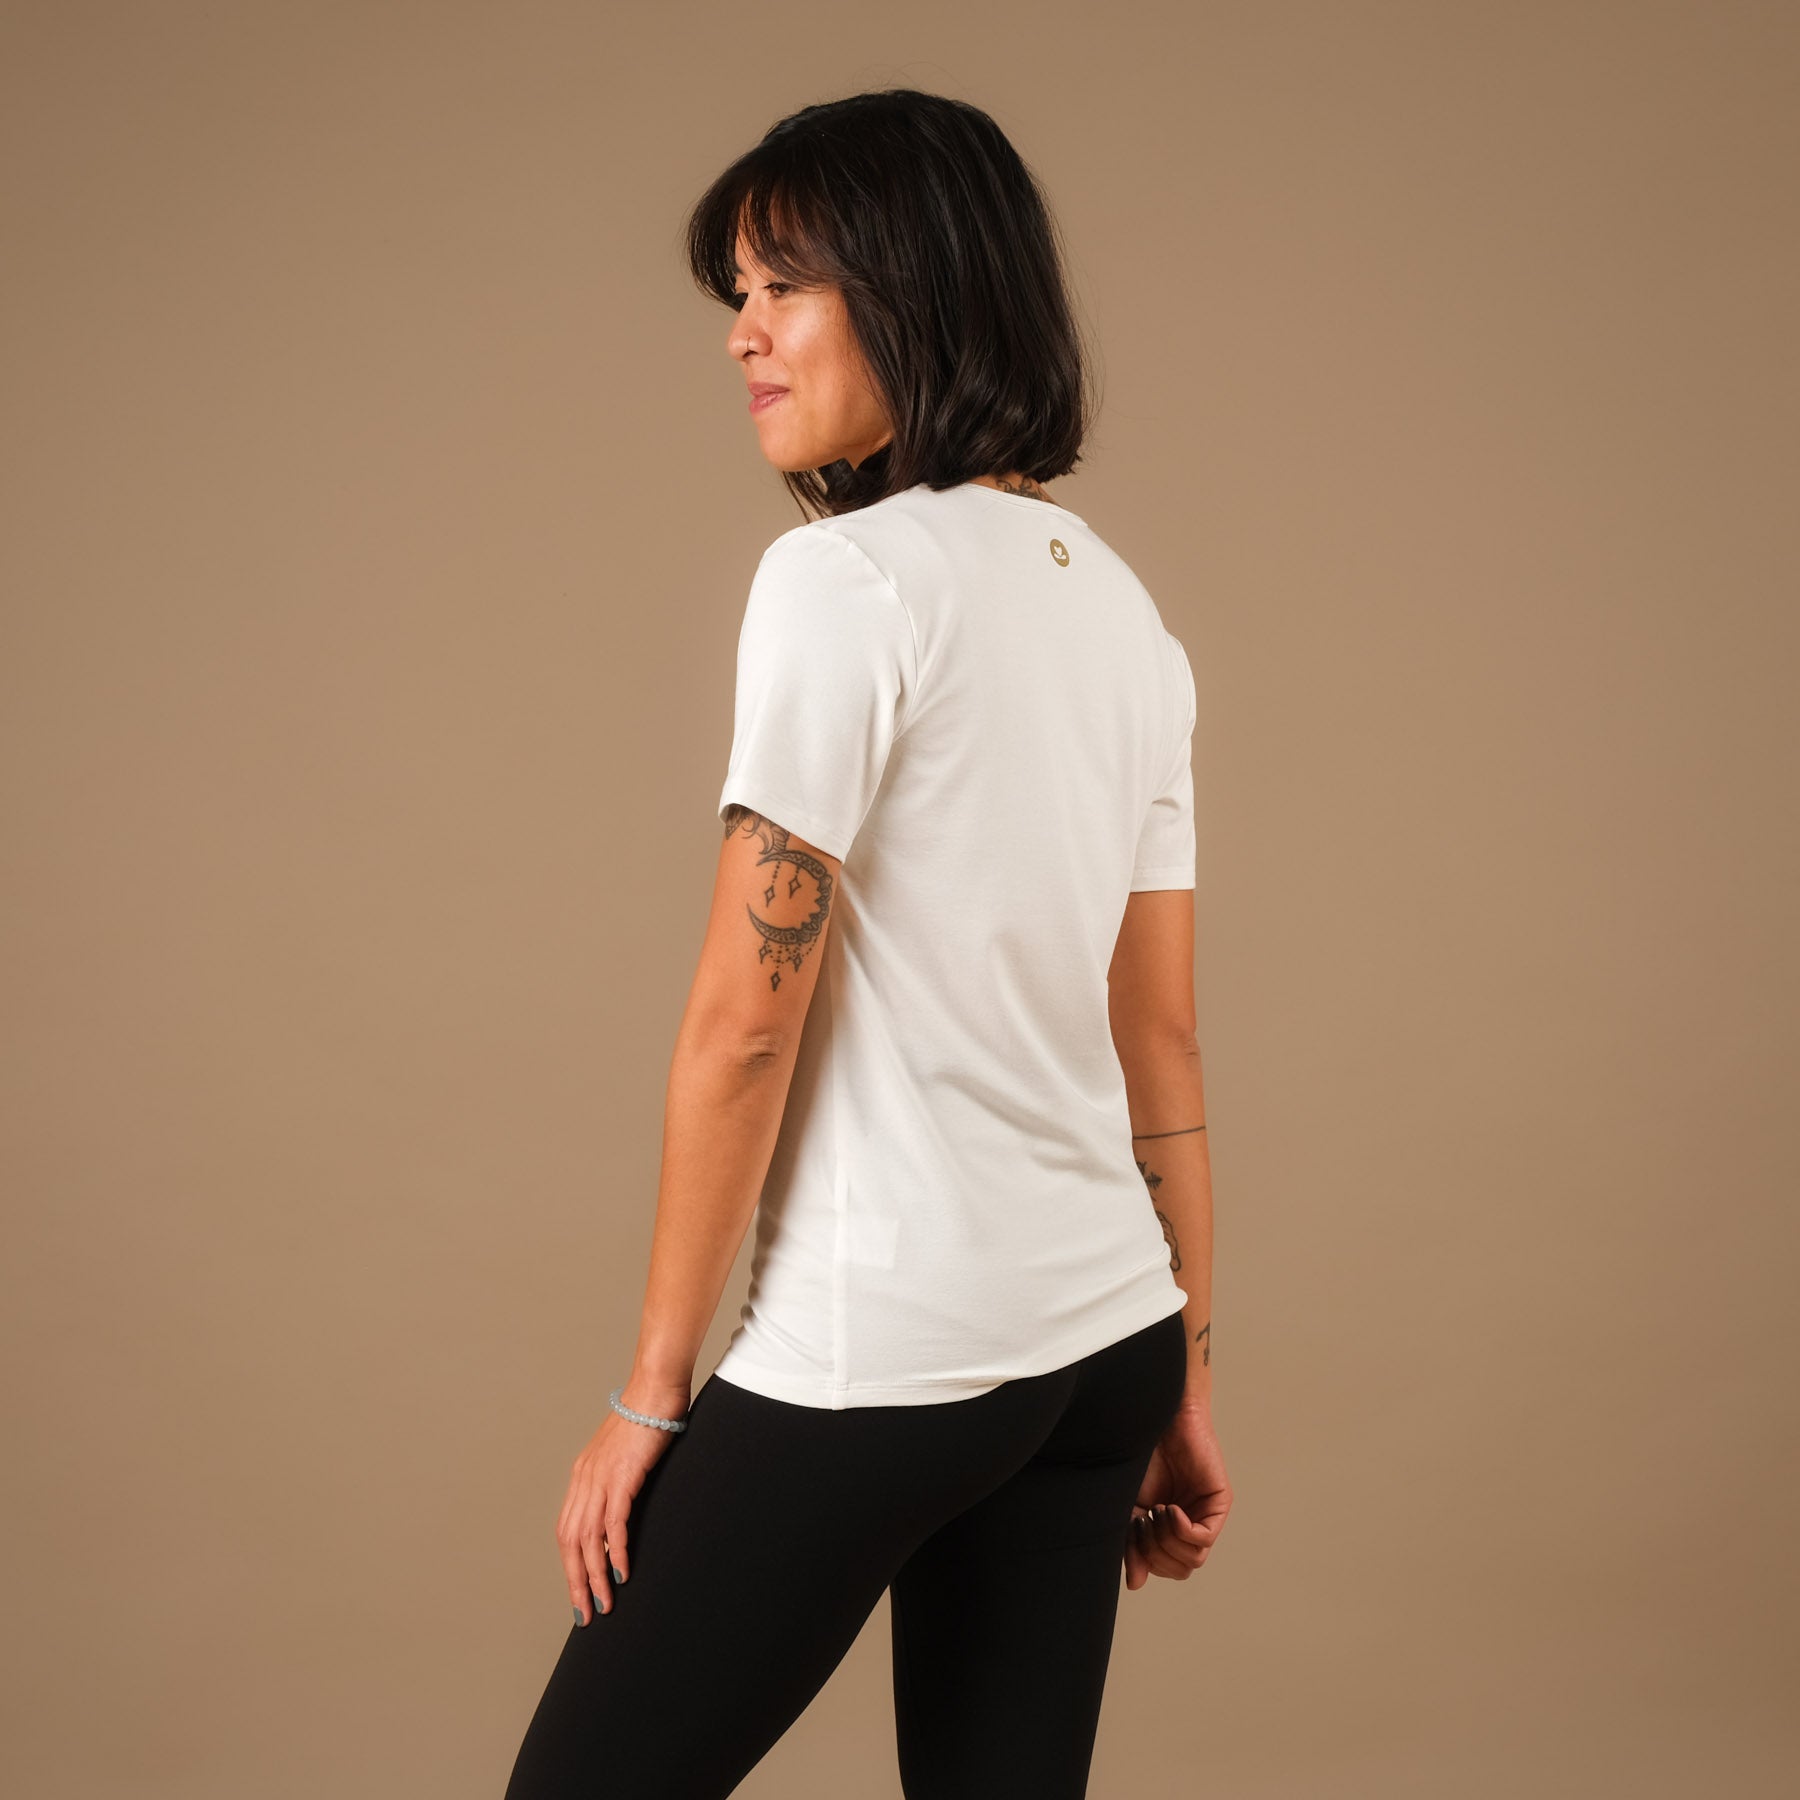 Shirt de yoga Classy à manches courtes blanc